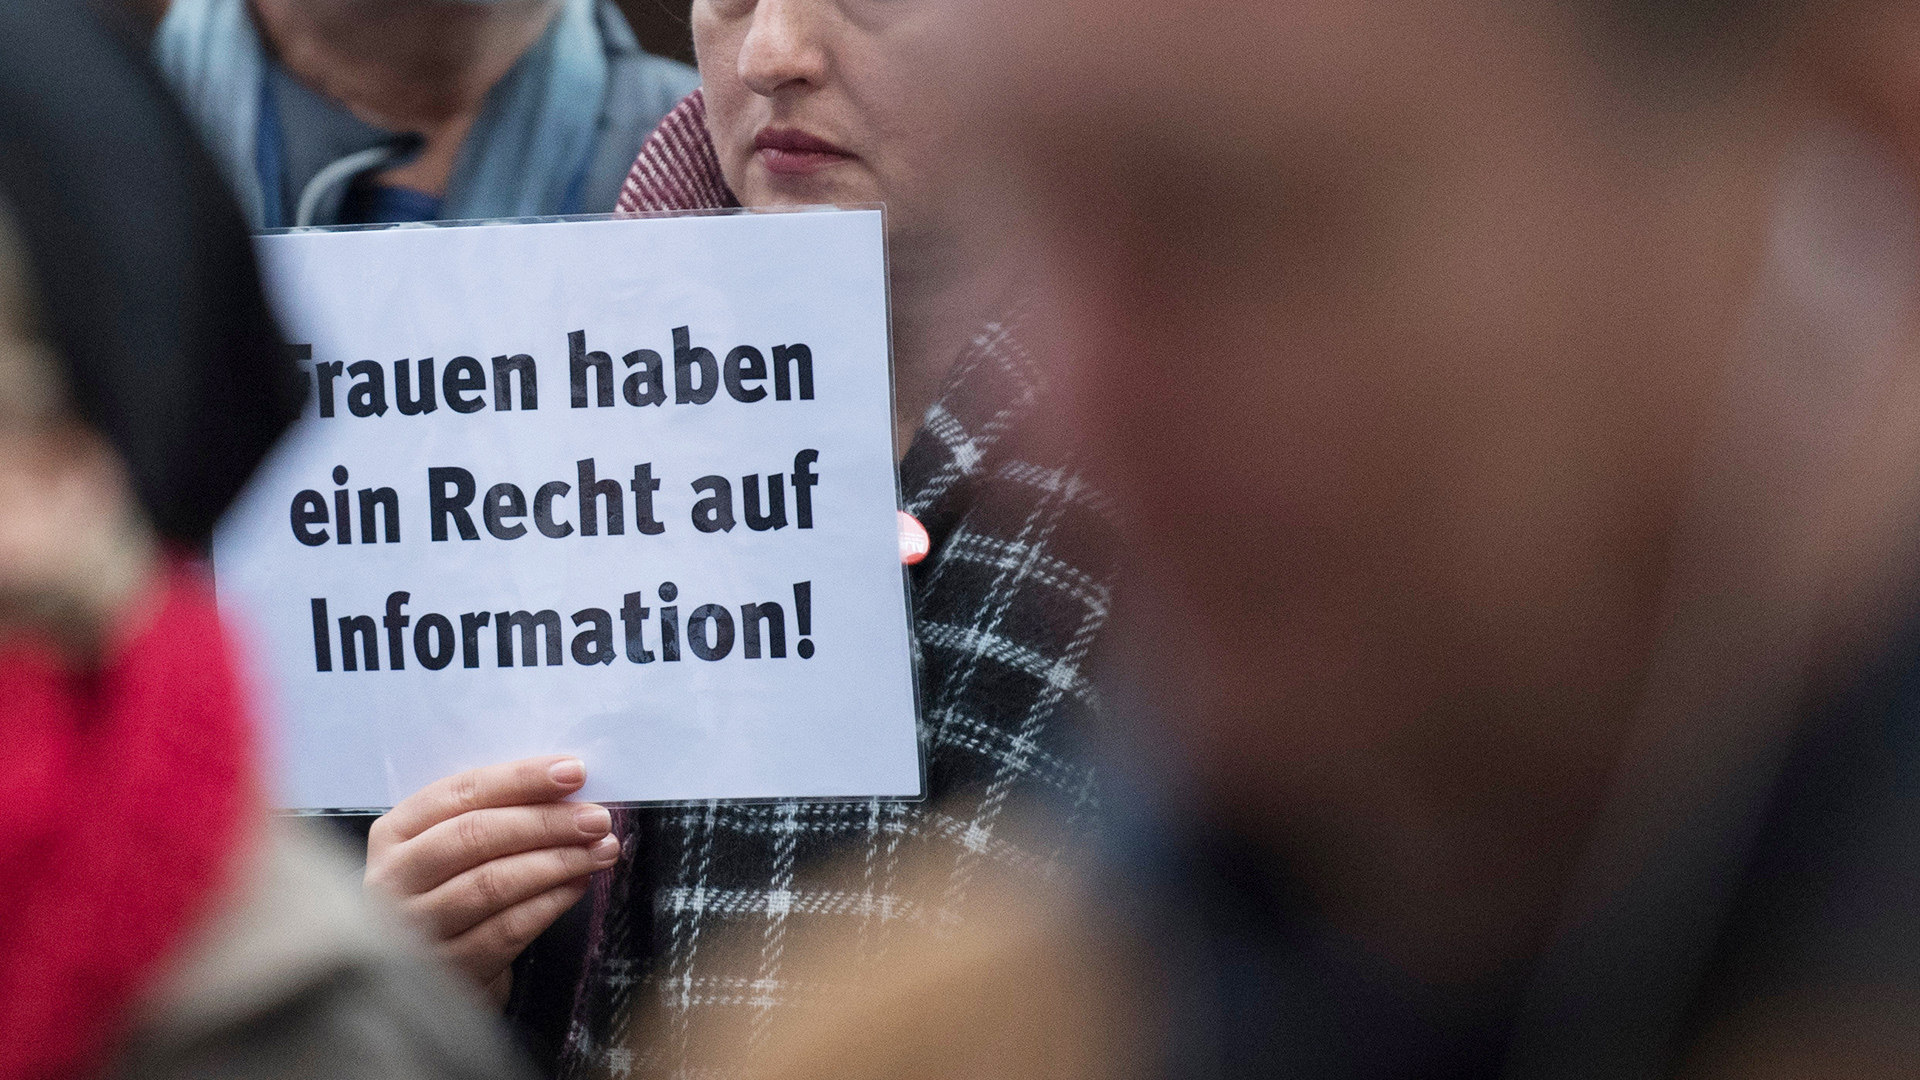 Auf einem Schild steht: "Frauen haben ein Recht auf Information!" | dpa